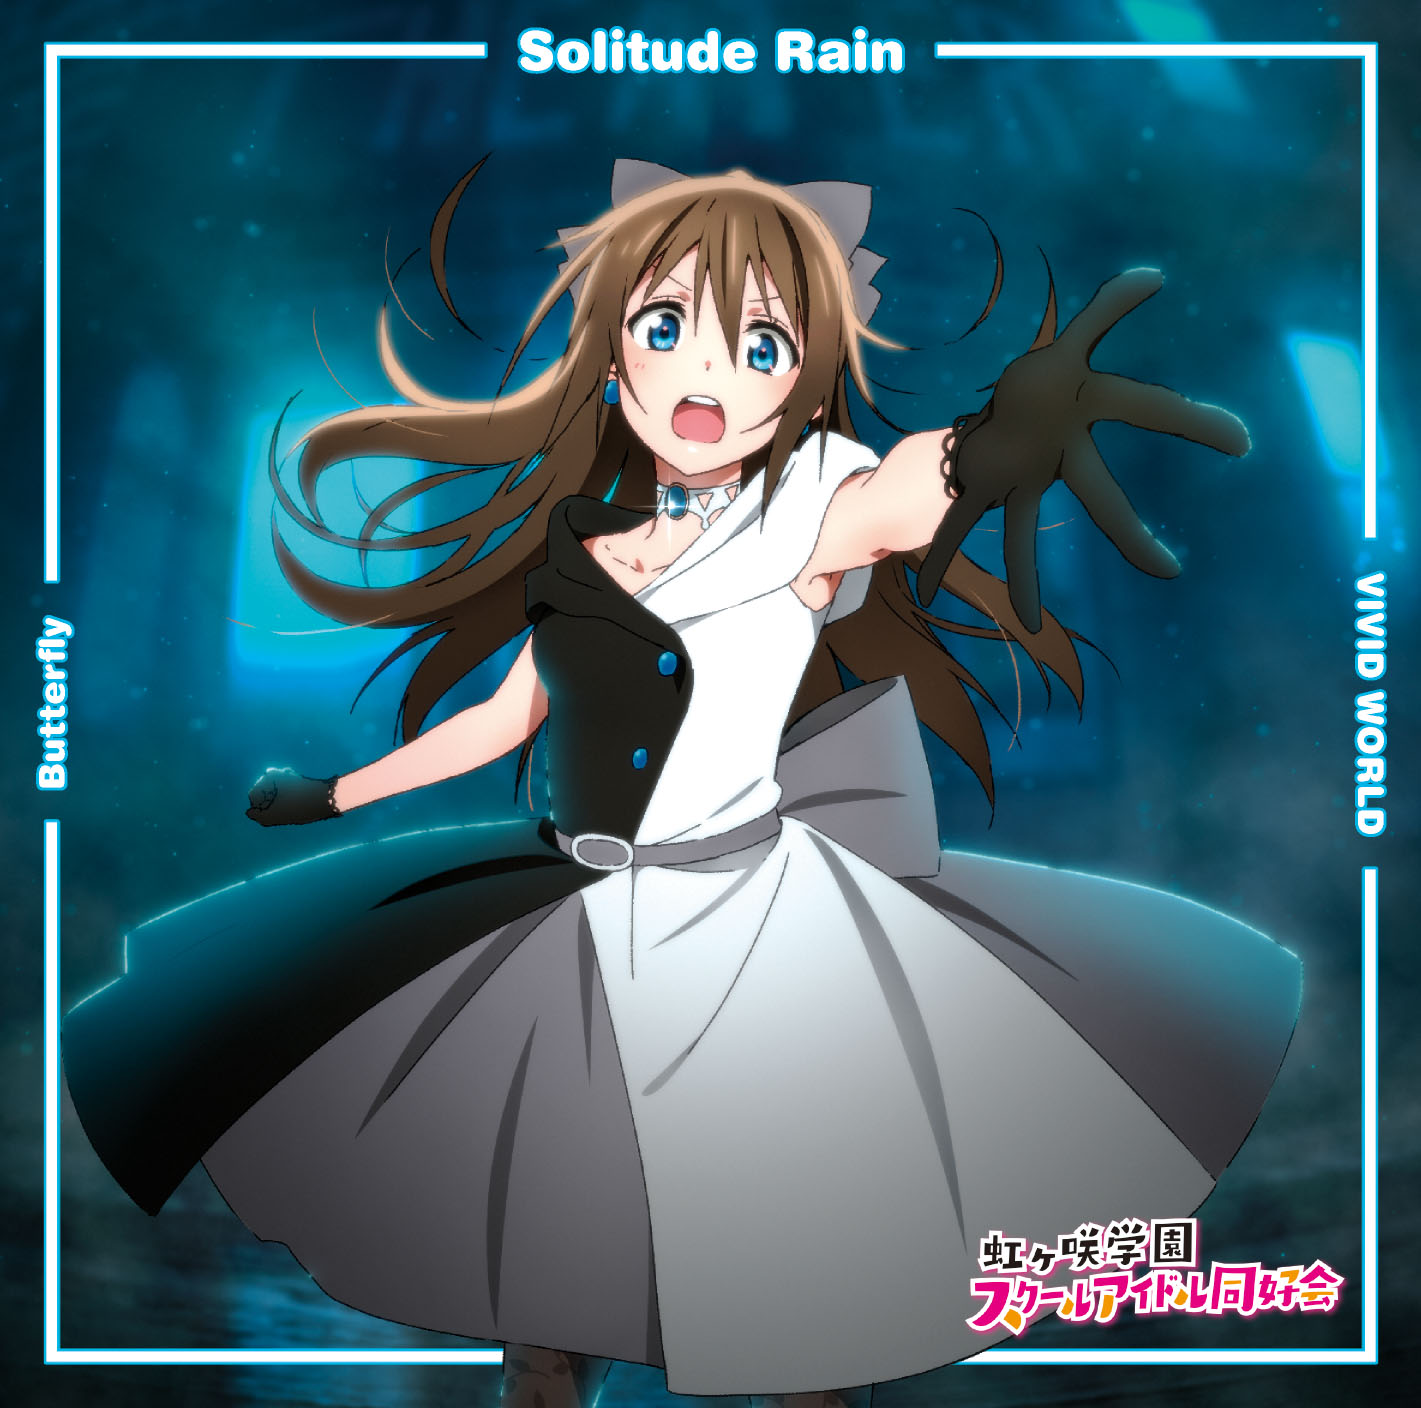 Rain or Shine (song) - Wikipedia